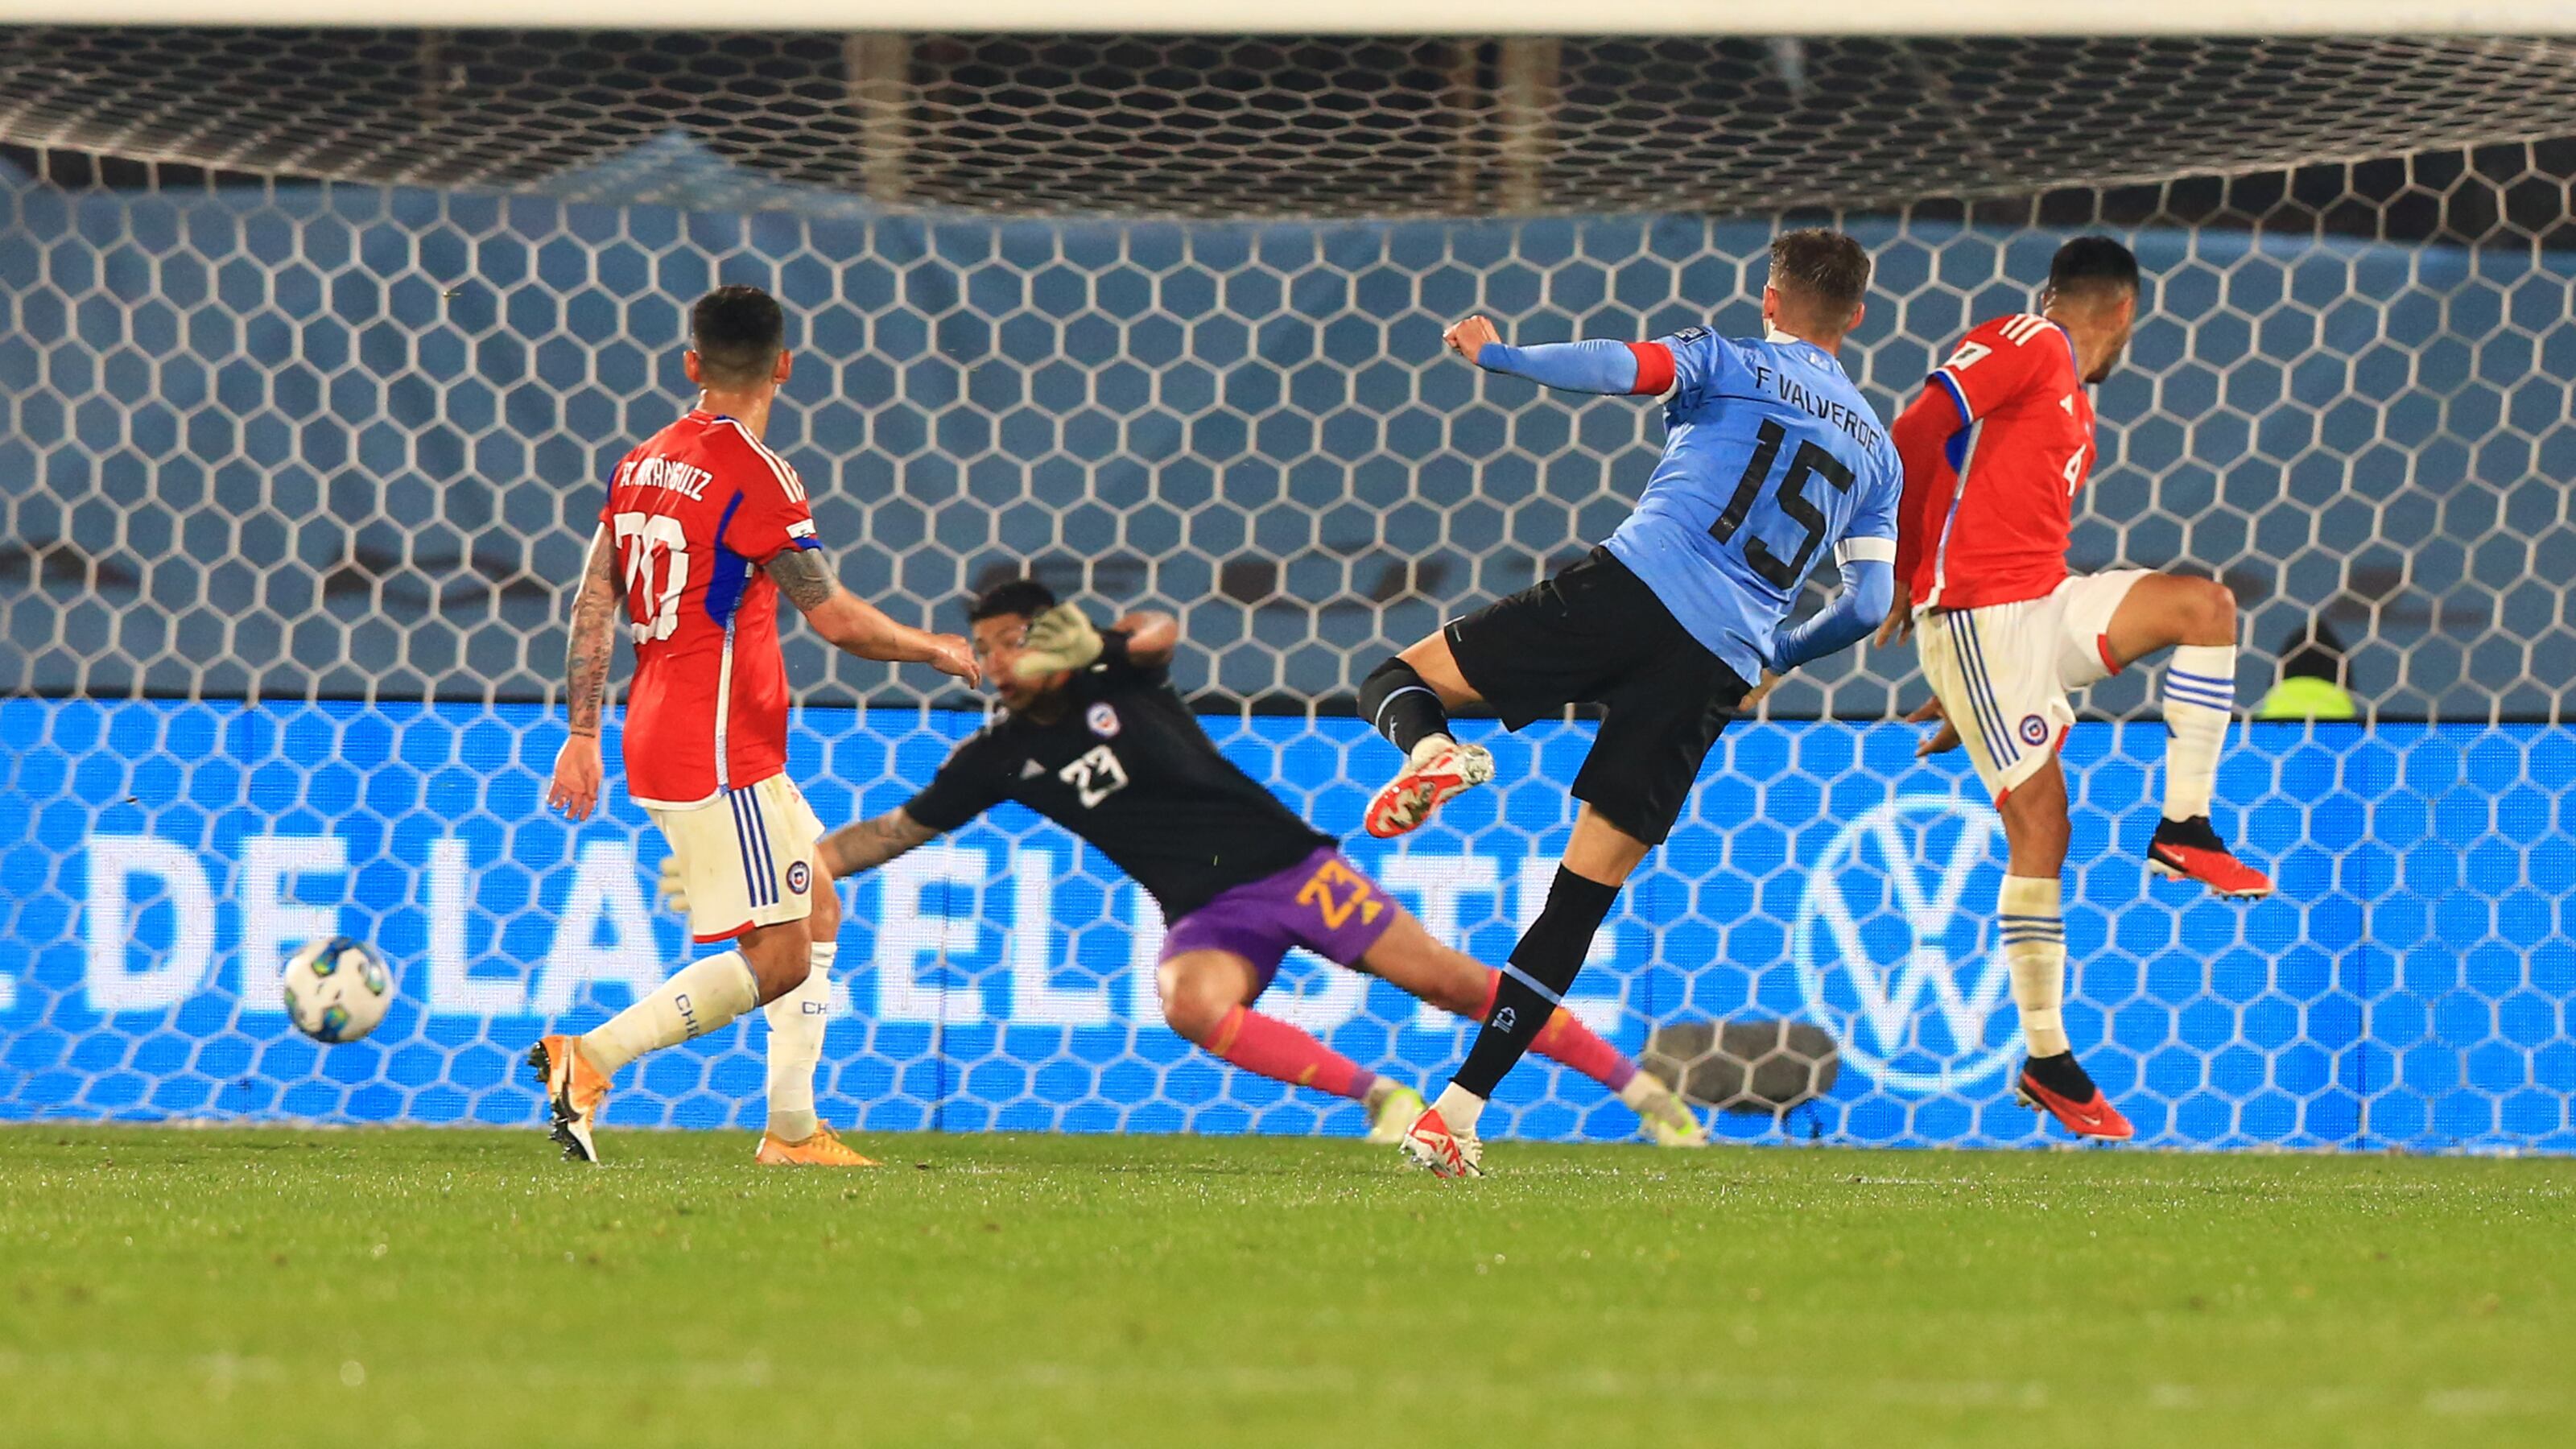 Valverde anota el 2-0 de Uruguay sobre Chile en el Centenario. / Javier Valdés/Photosport